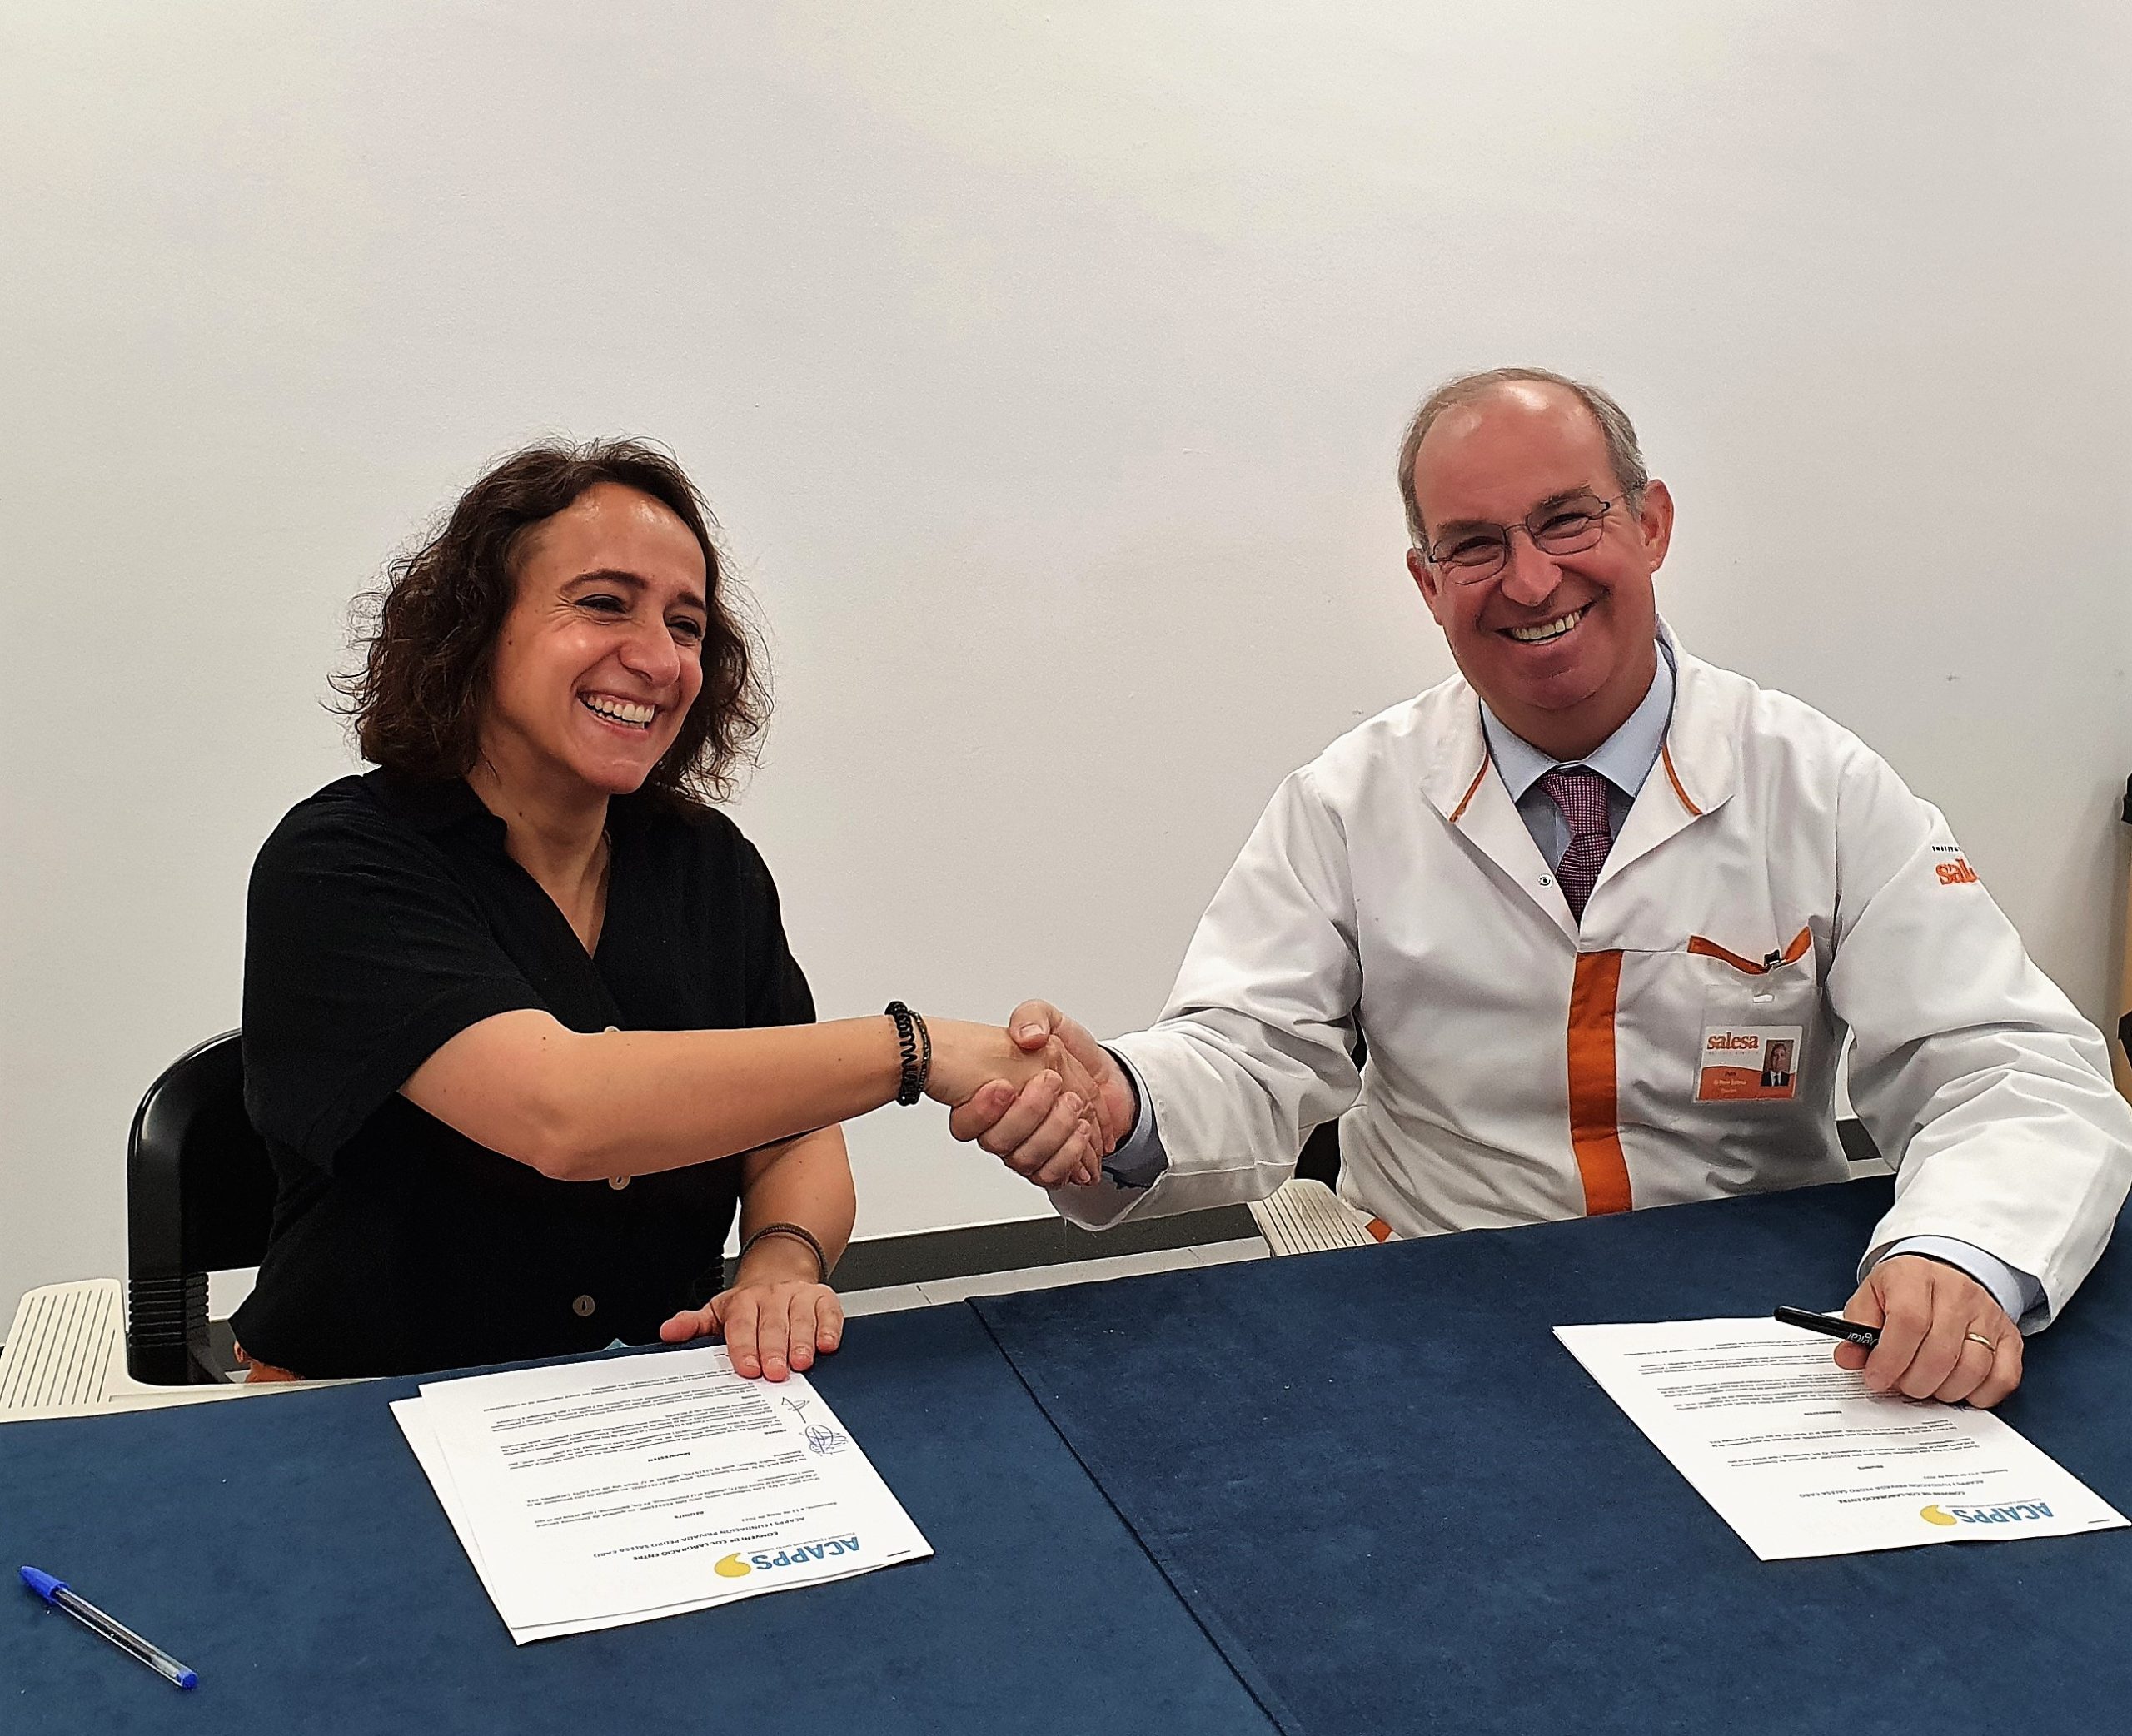 Signem un nou conveni de col·laboració amb la Fundació Pedro Salesa